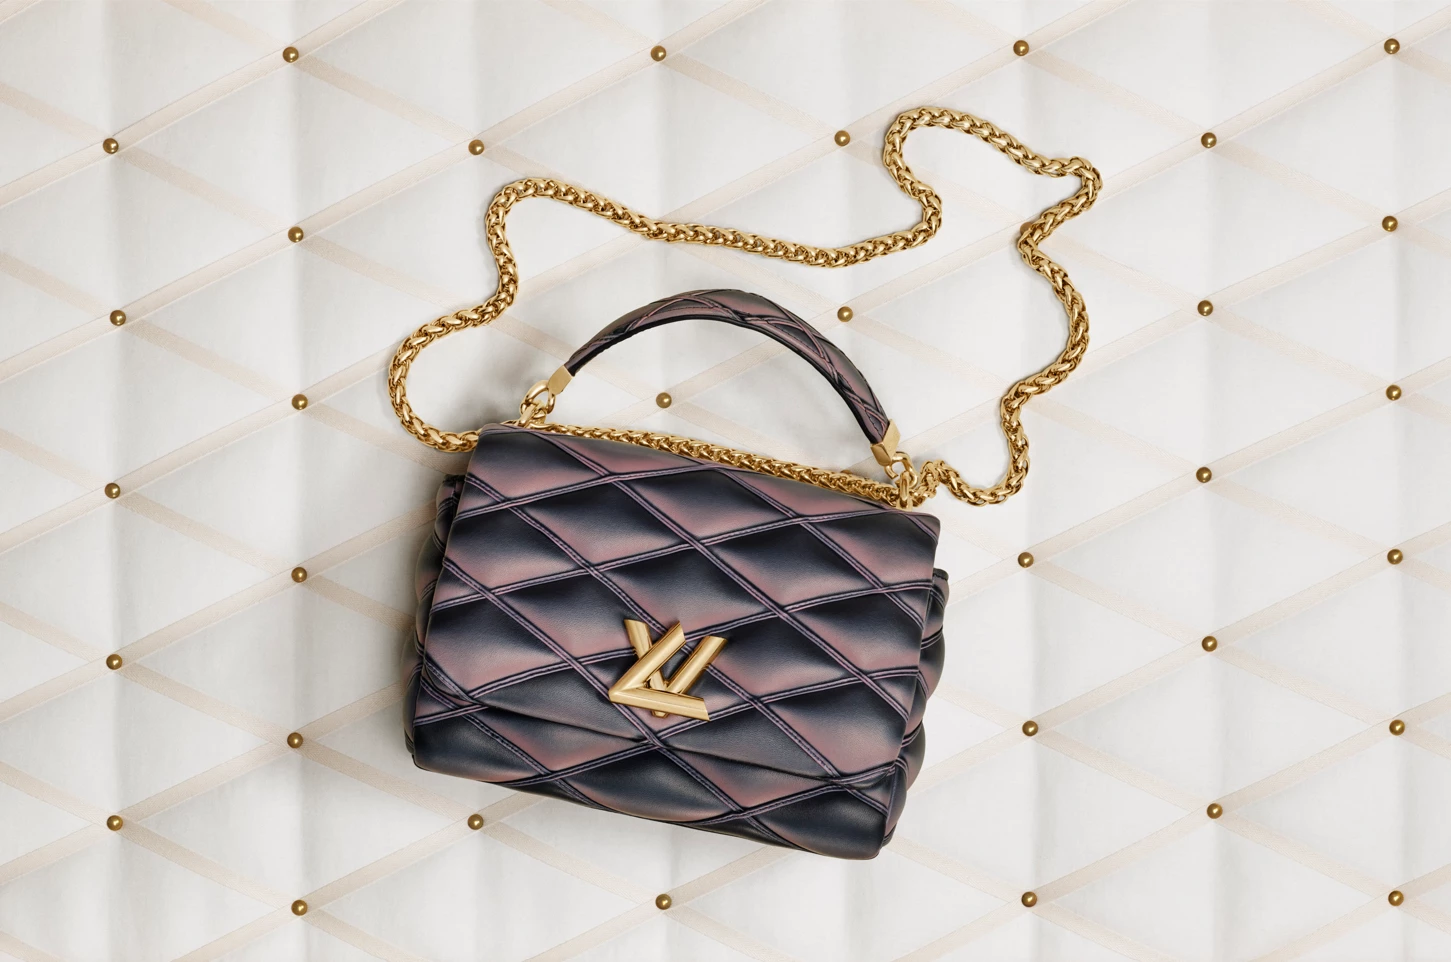 Новая it-bag: Louis Vuitton выпустил новую модель сумок